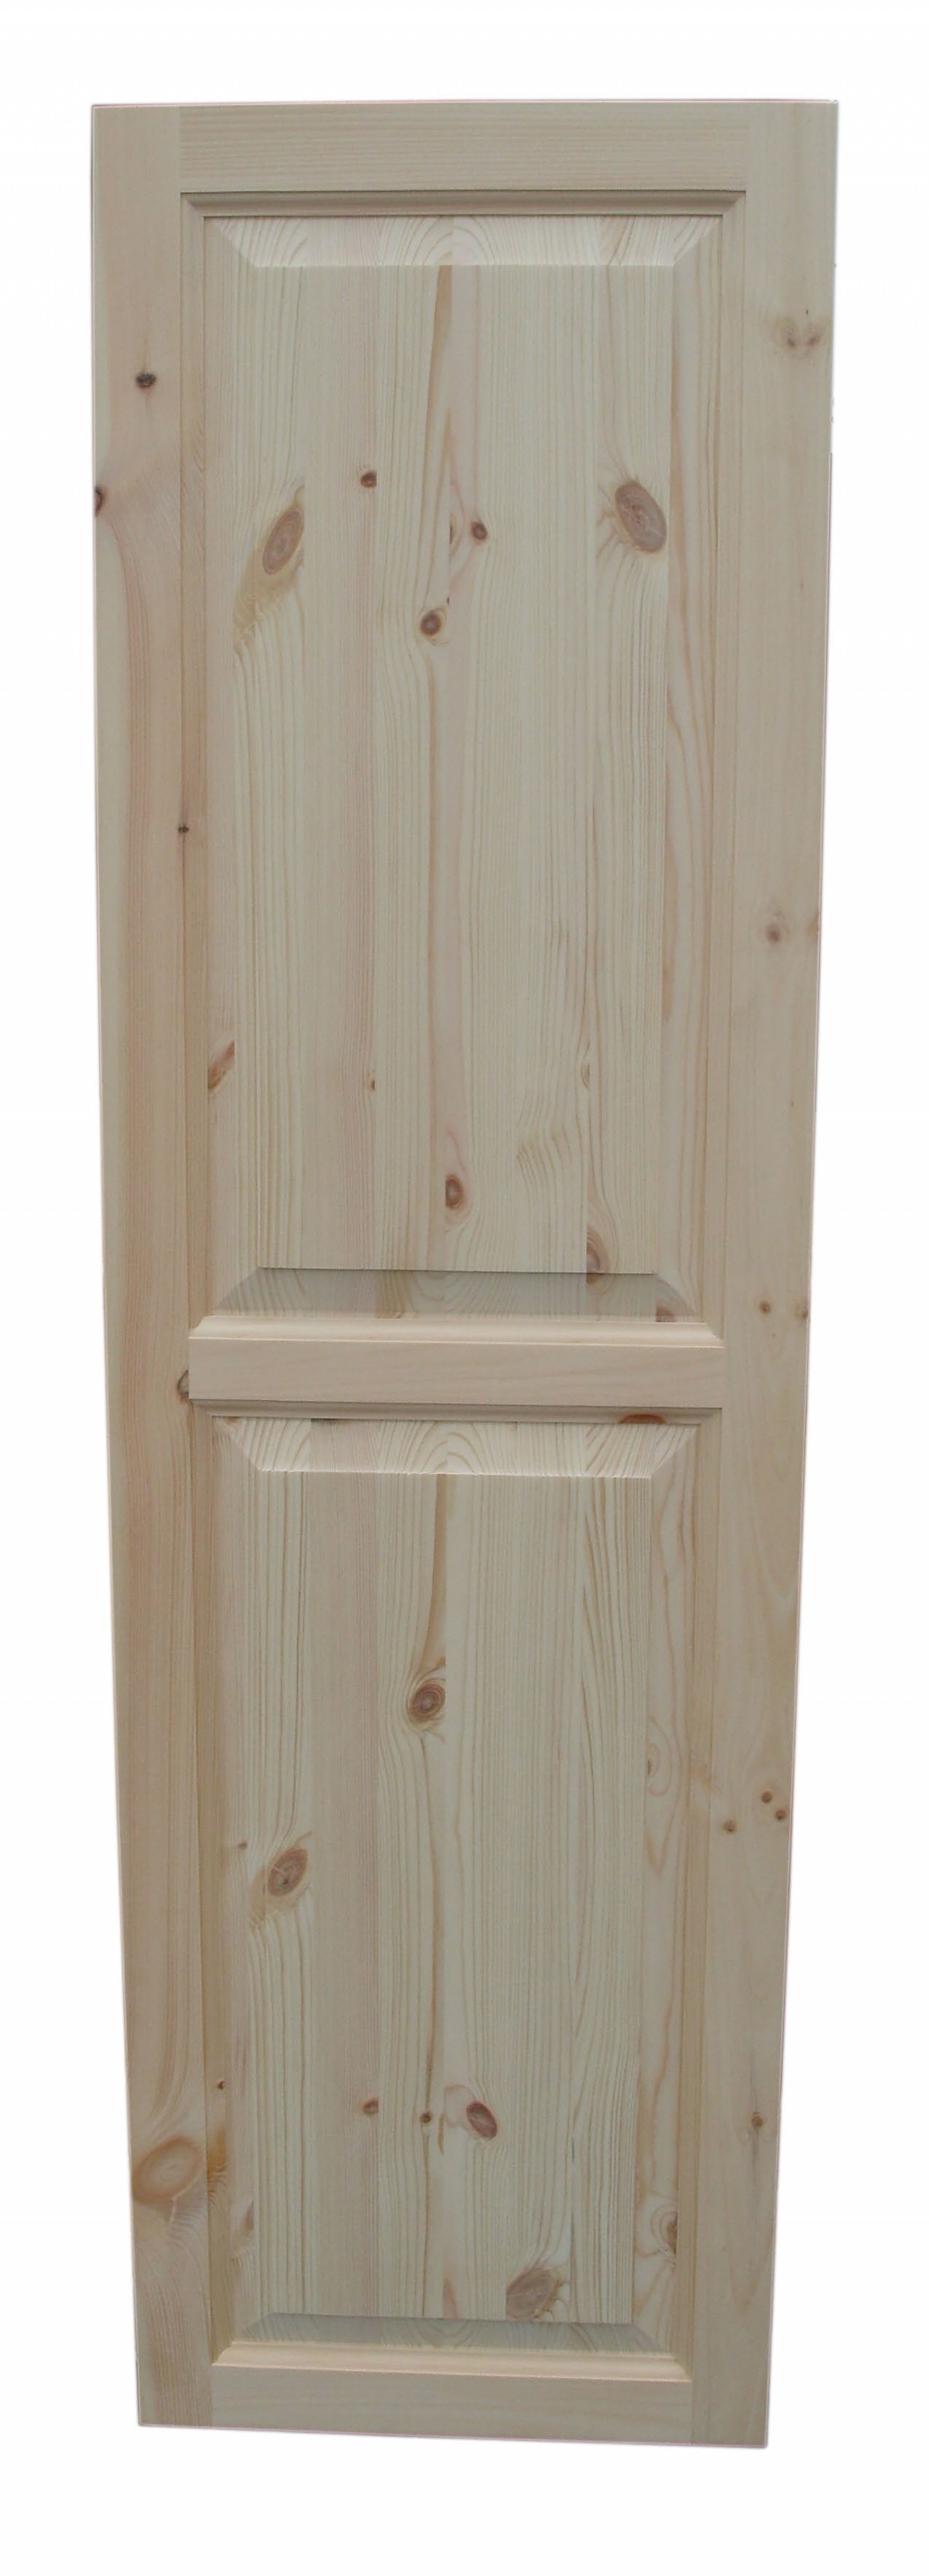 Images of Replacement Solid Pine Doors replacement wardrobe doors